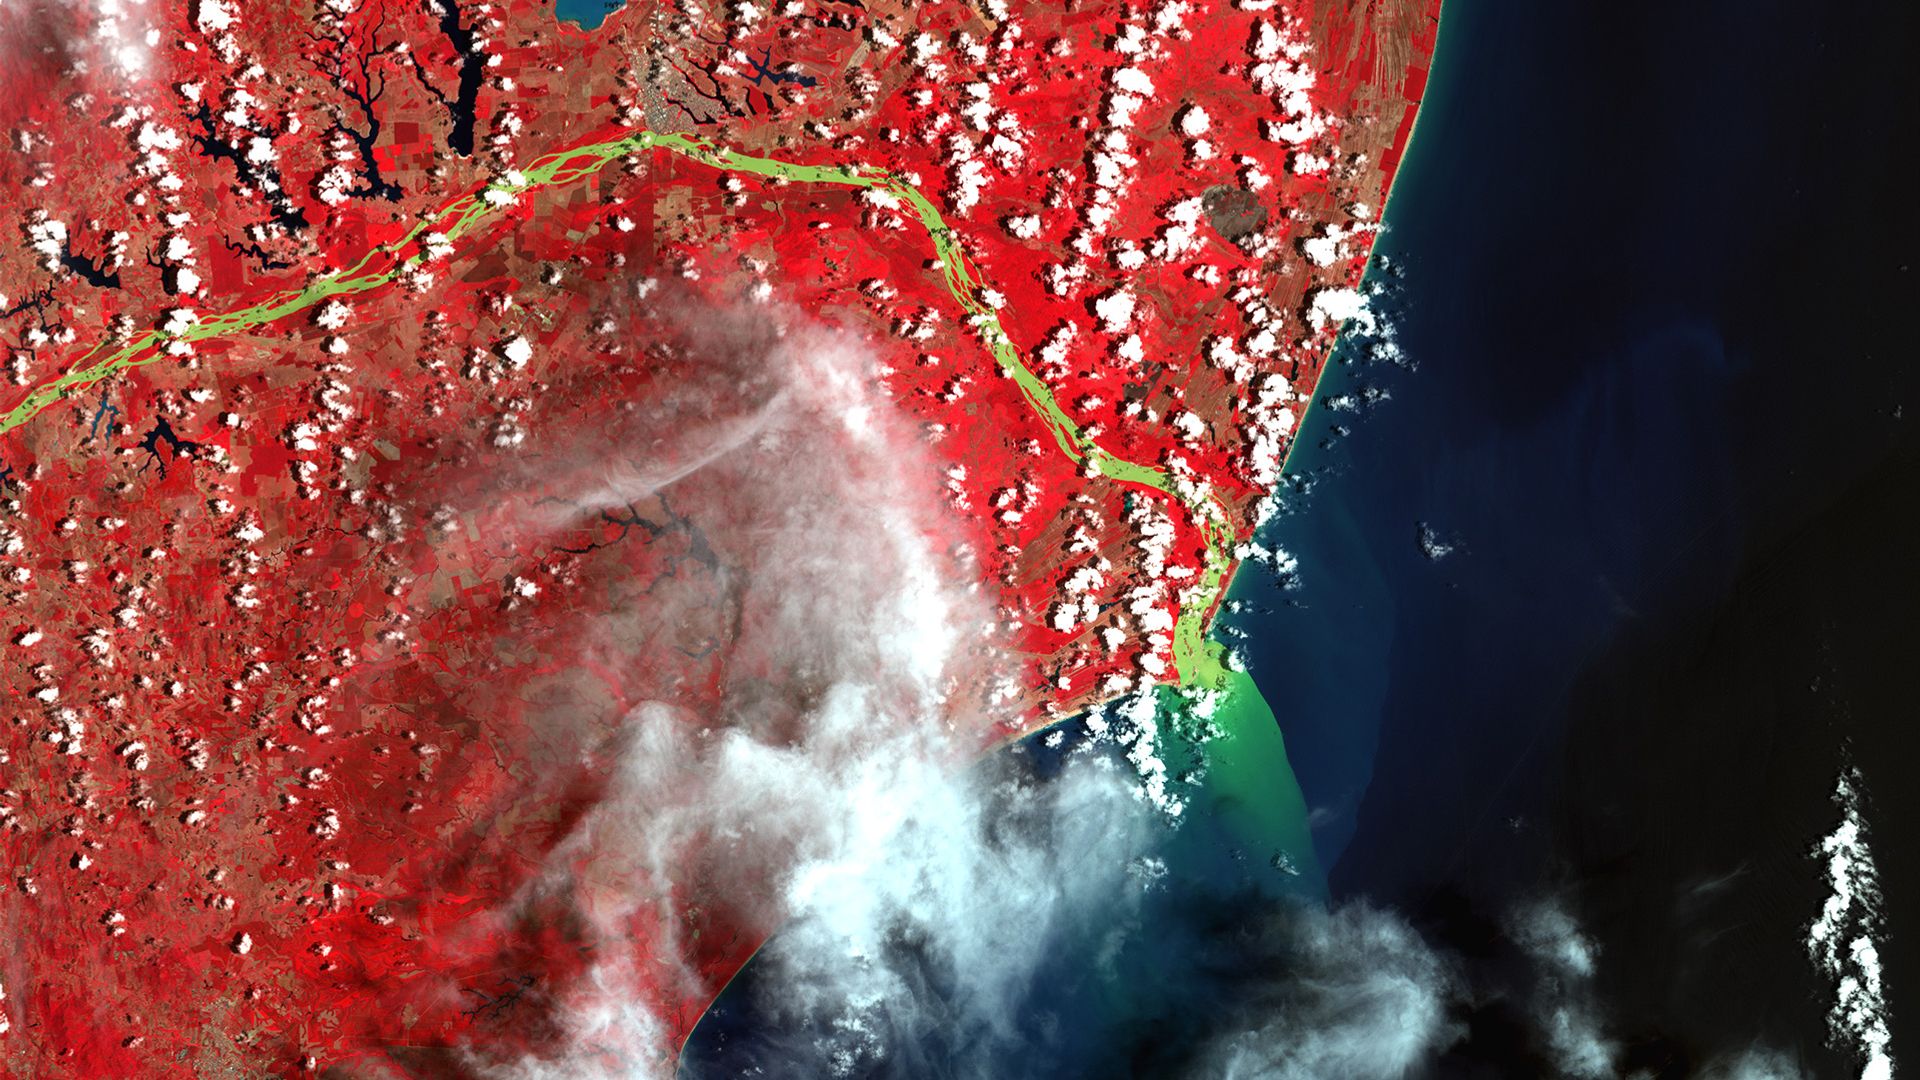  Em 30/11/2015, imagem da foz do Rio Doce, em Linhares, feita pelo Satélite Landsat/Nasa, utilizando recurso de false color com infravermelho, mostra a chegada da lama ao mar